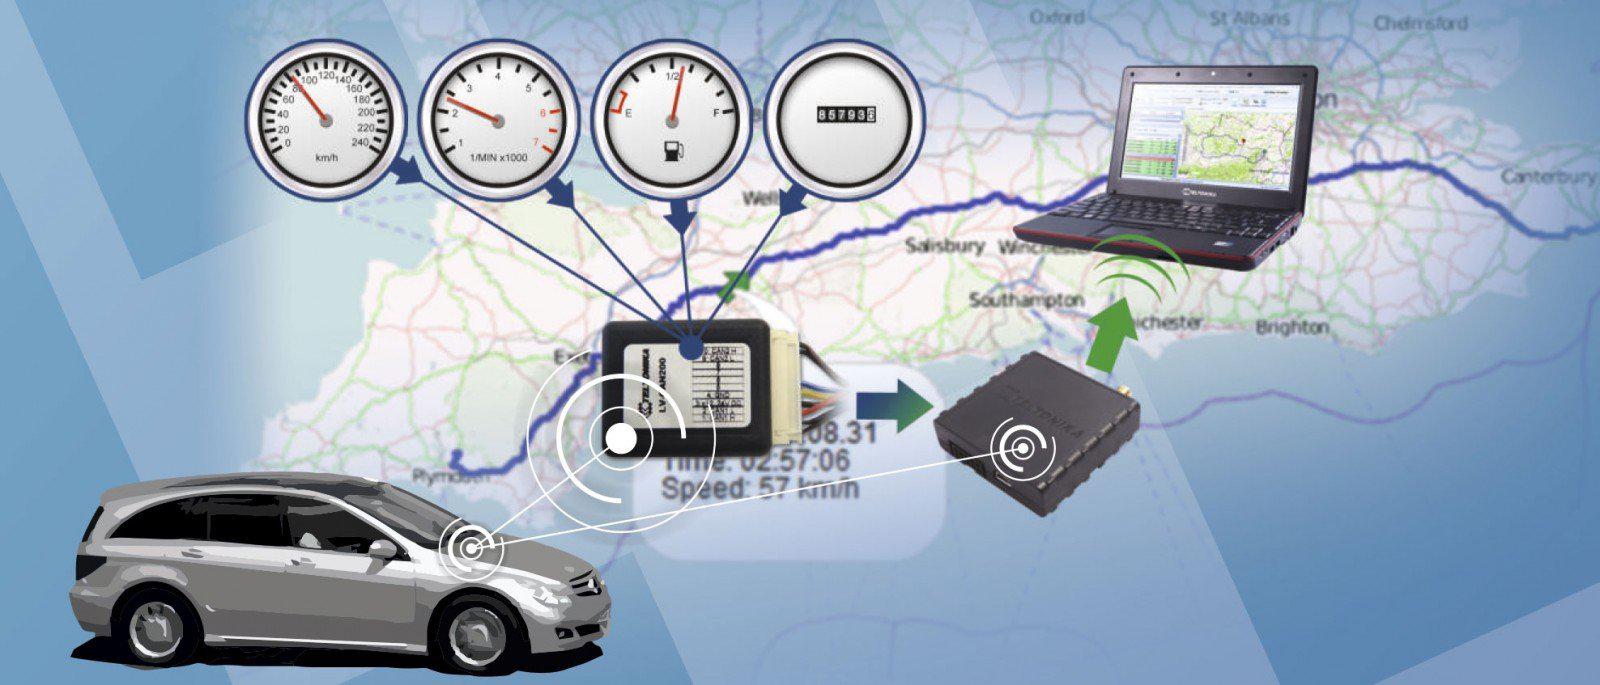 Спутниковый gps мониторинг транспорта. Спутниковая система слежения Телтоника. GPS мониторинг транспорта. Система GPS мониторинга транспорта. ГЛОНАСС для автомобиля.